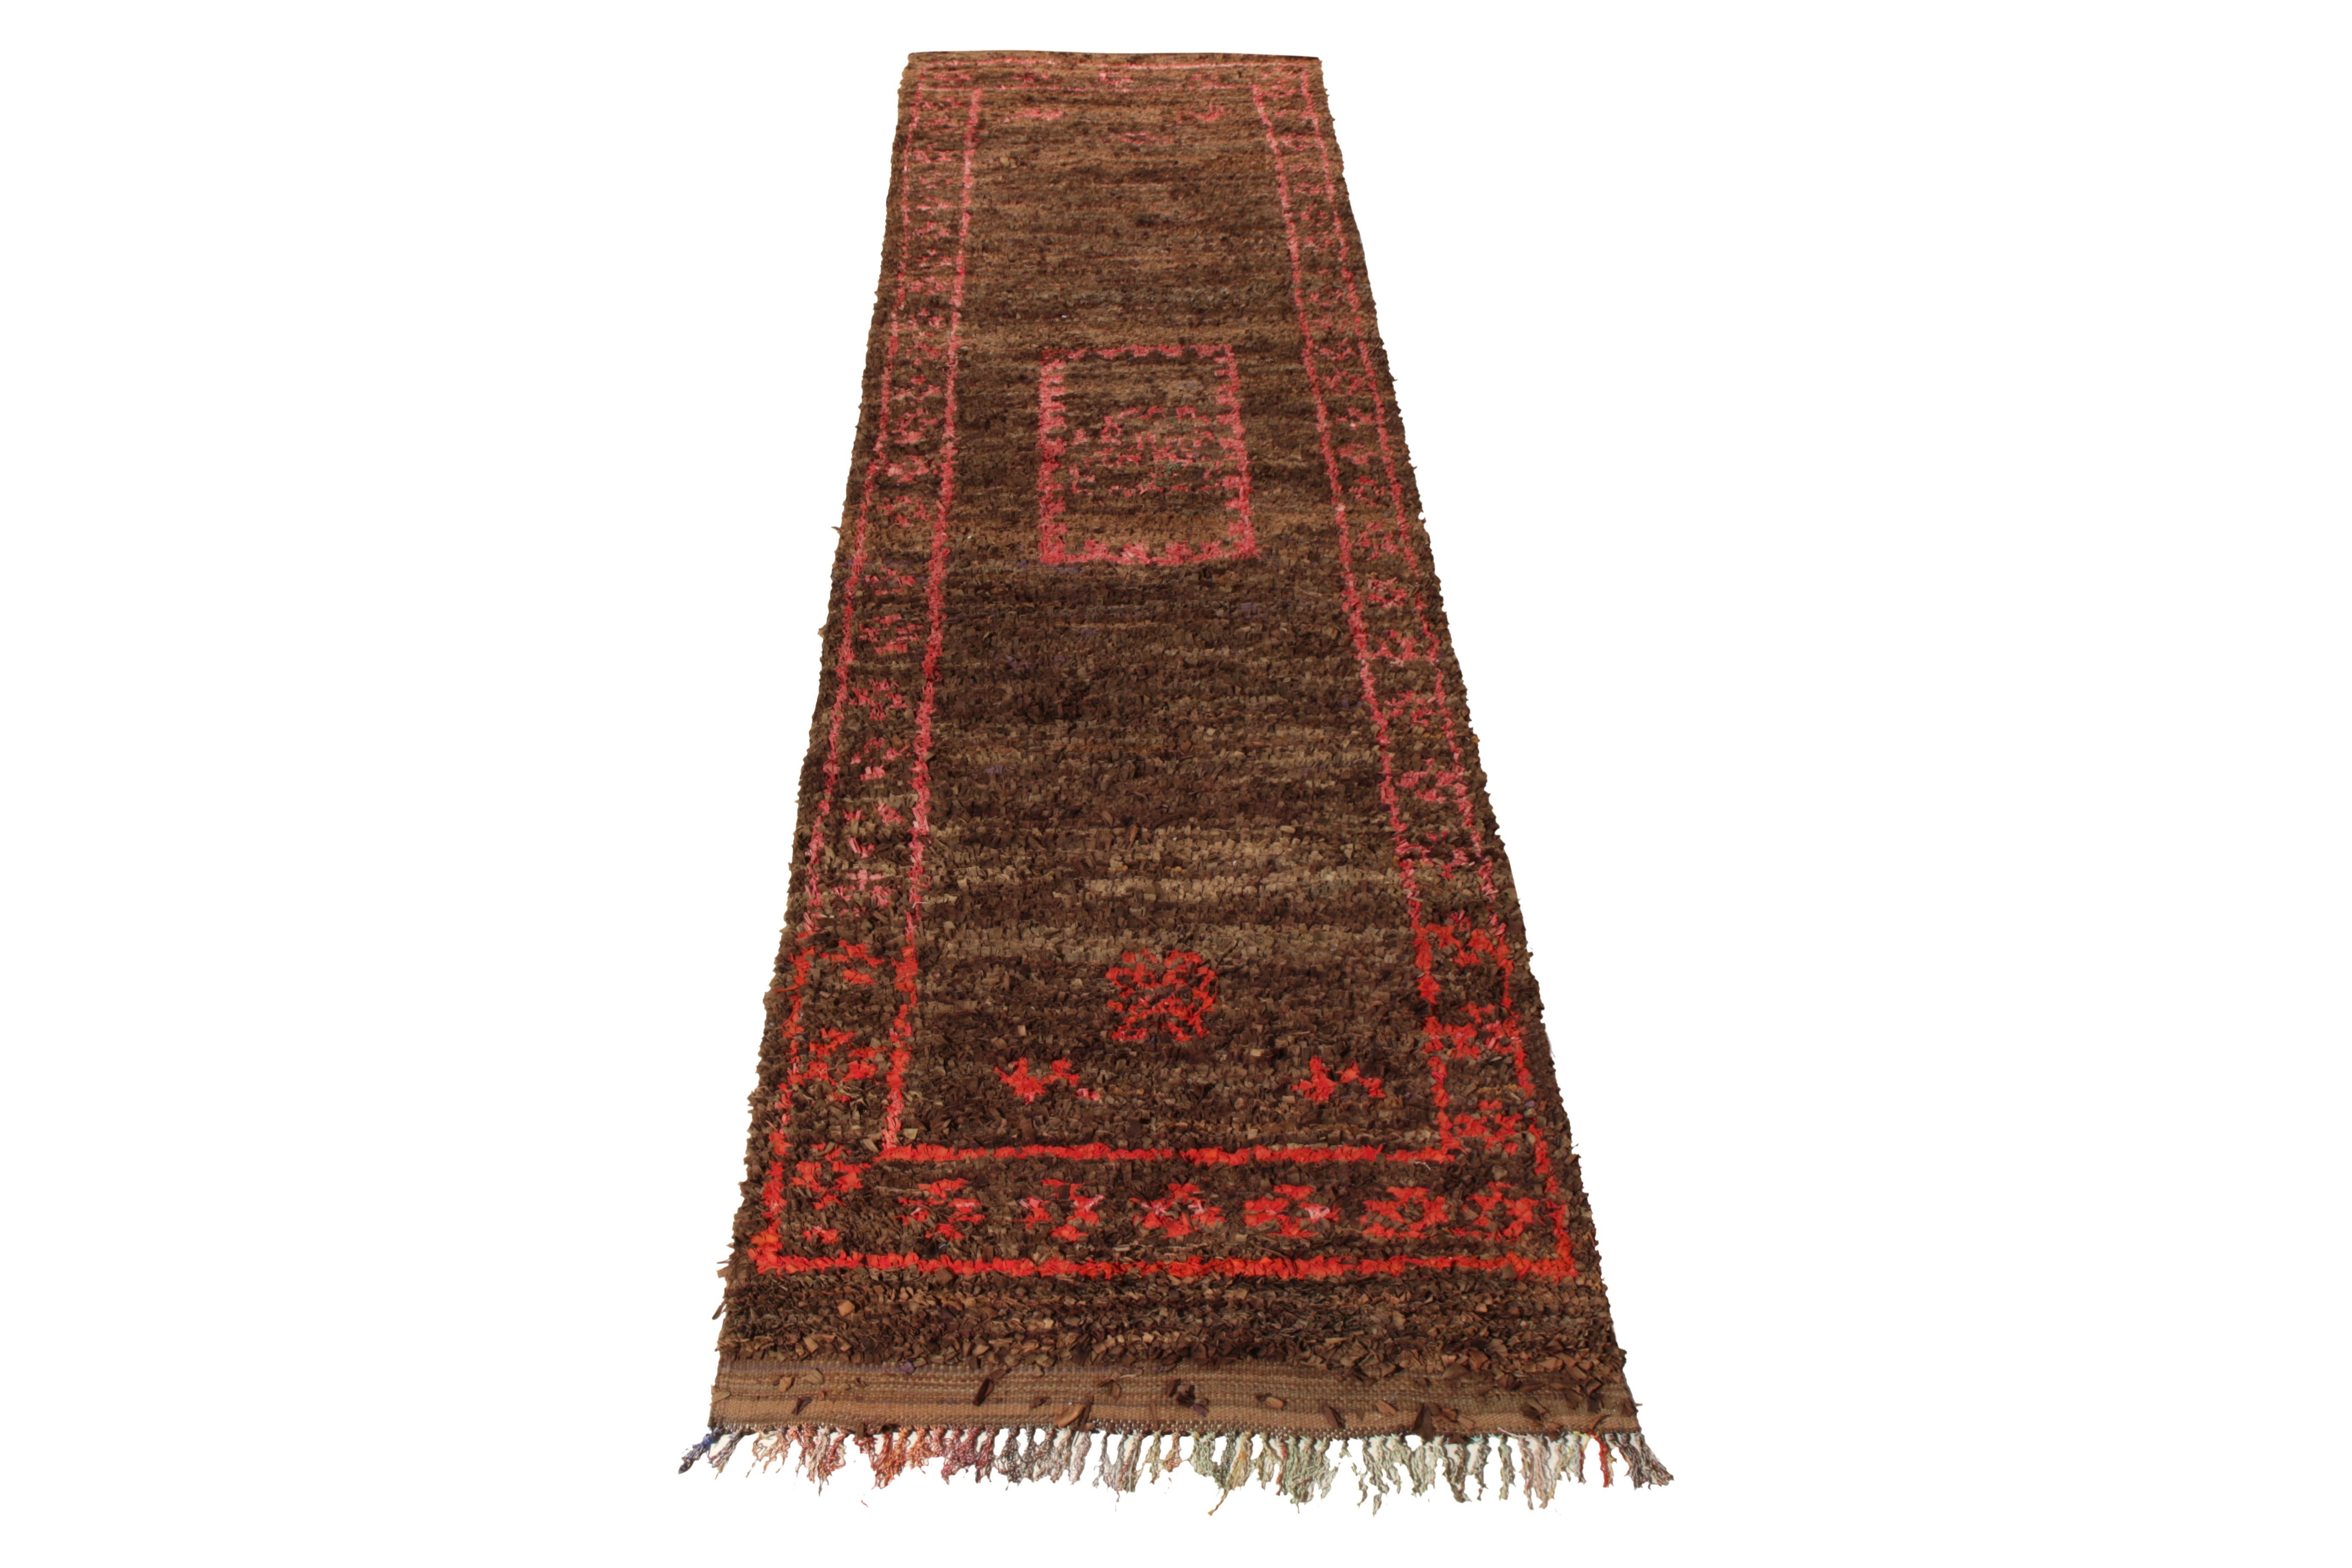 Noué à la main en tissu Boucherouite du Maroc vers 1950-1960, ce chemin de table marocain 4x13 de style berbère bénéficie d'une couleur unique et d'un motif de médaillon. Avec des touches tribales prédominantes dans la géométrie, cette palette